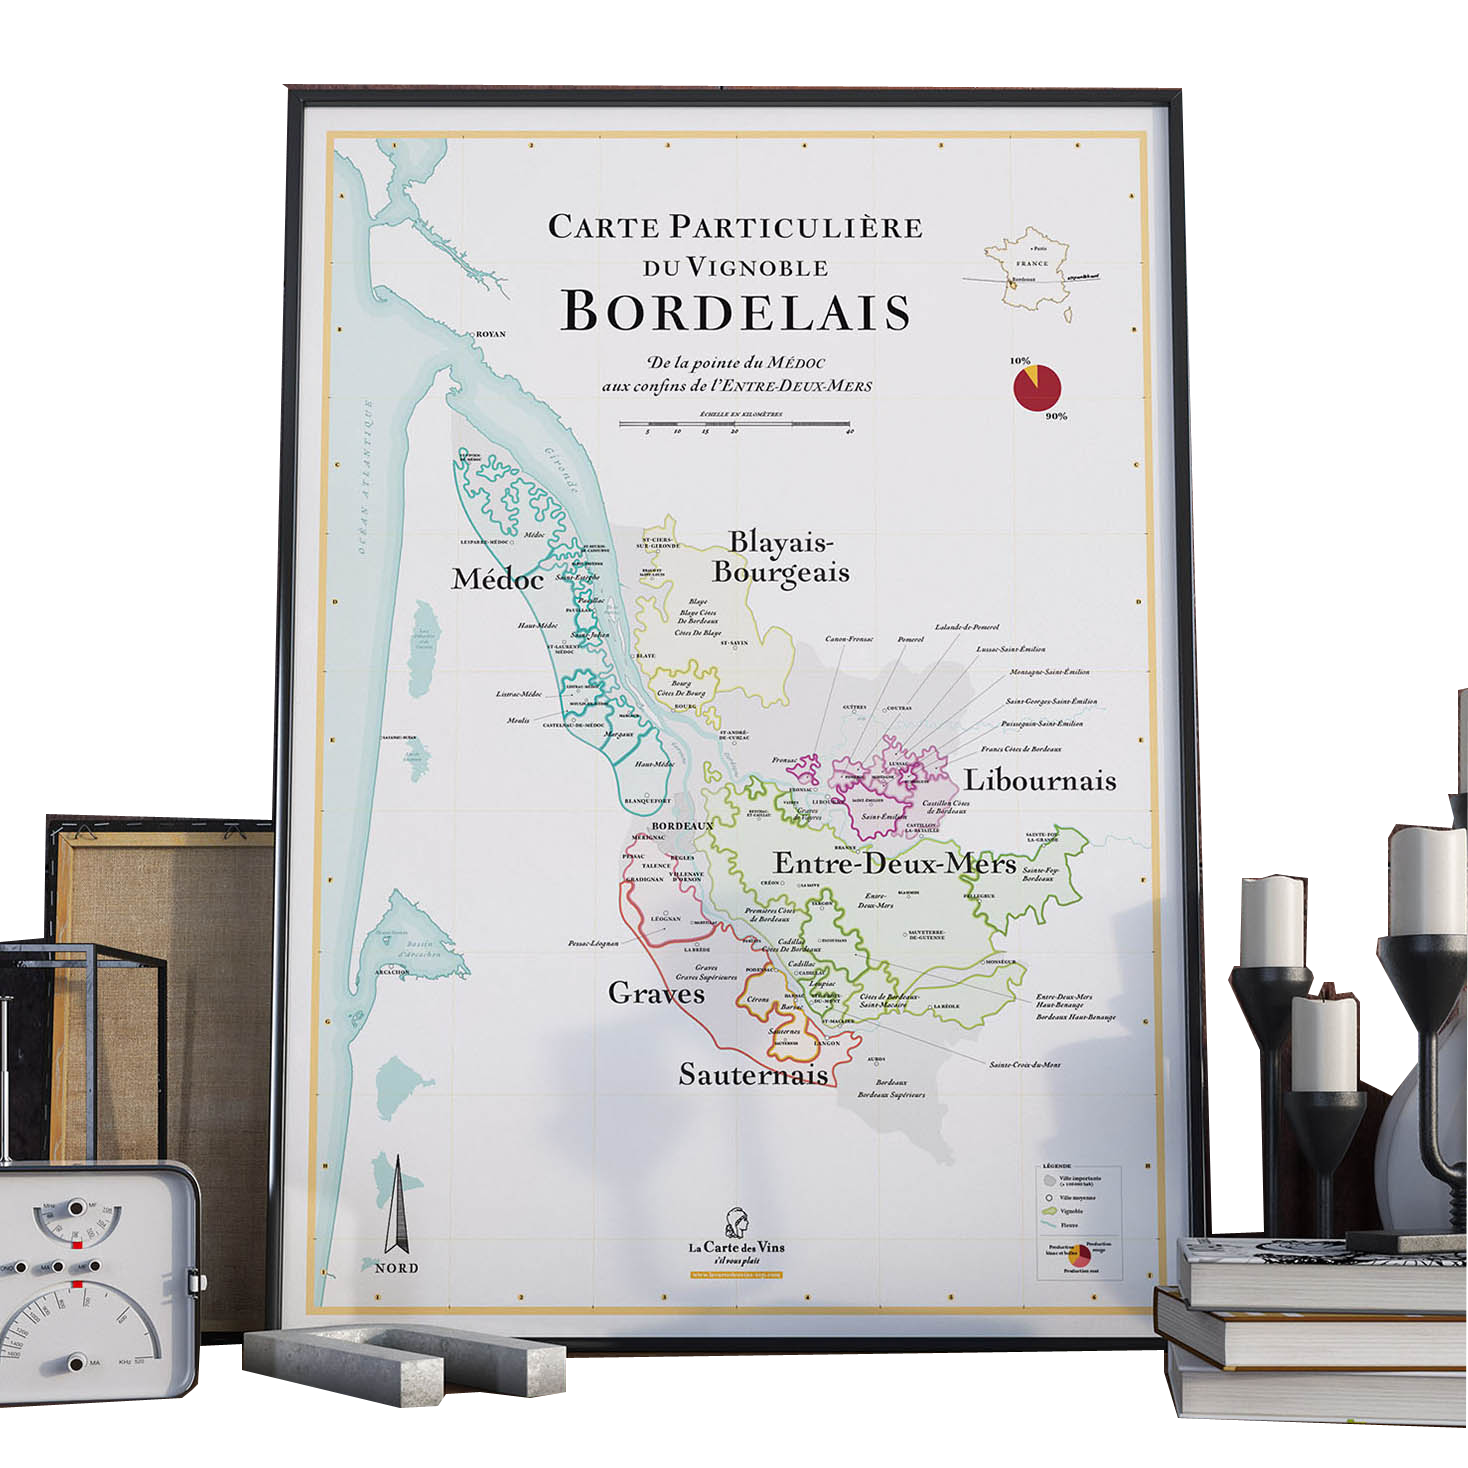 La Carte des Vins de Bordeaux - La Carte des Vins svp